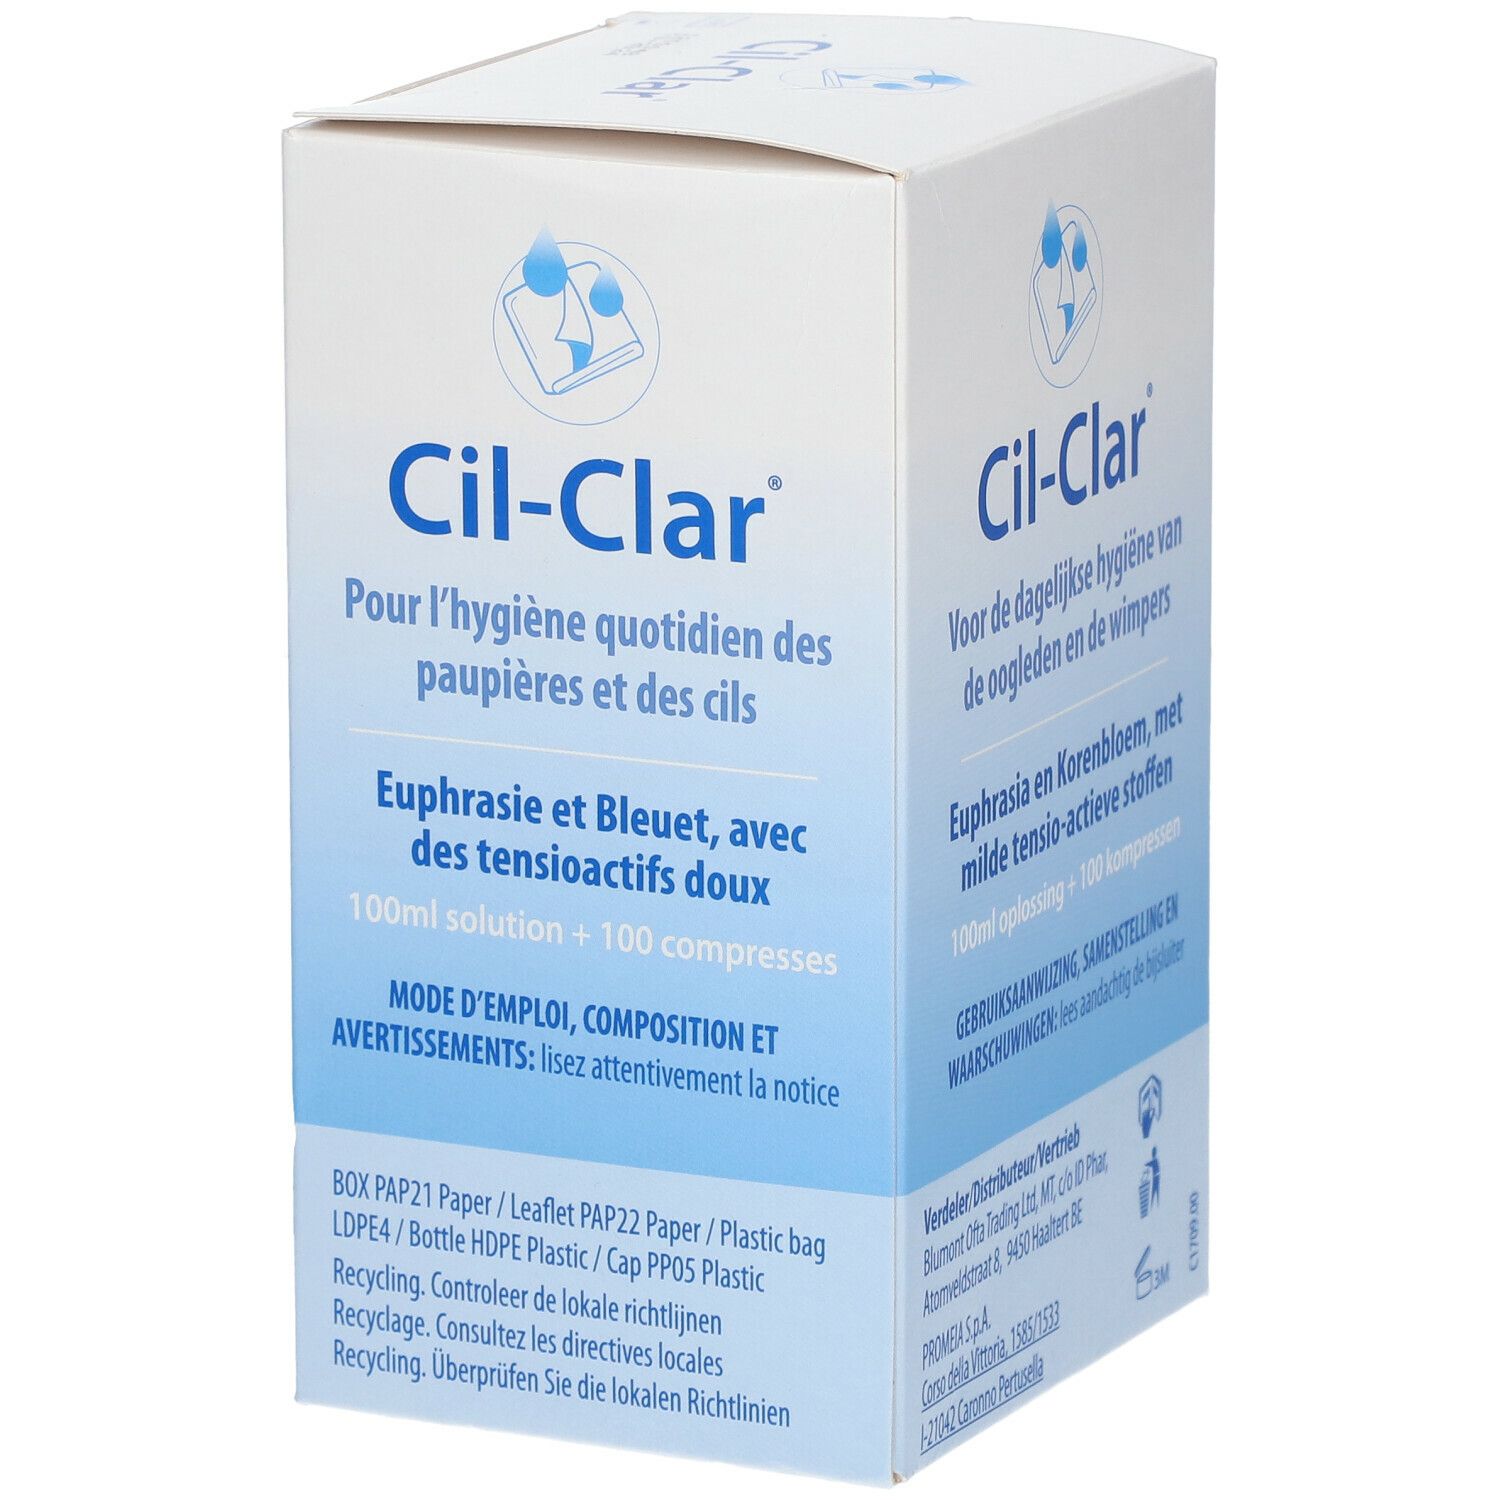 Cil-Clar®